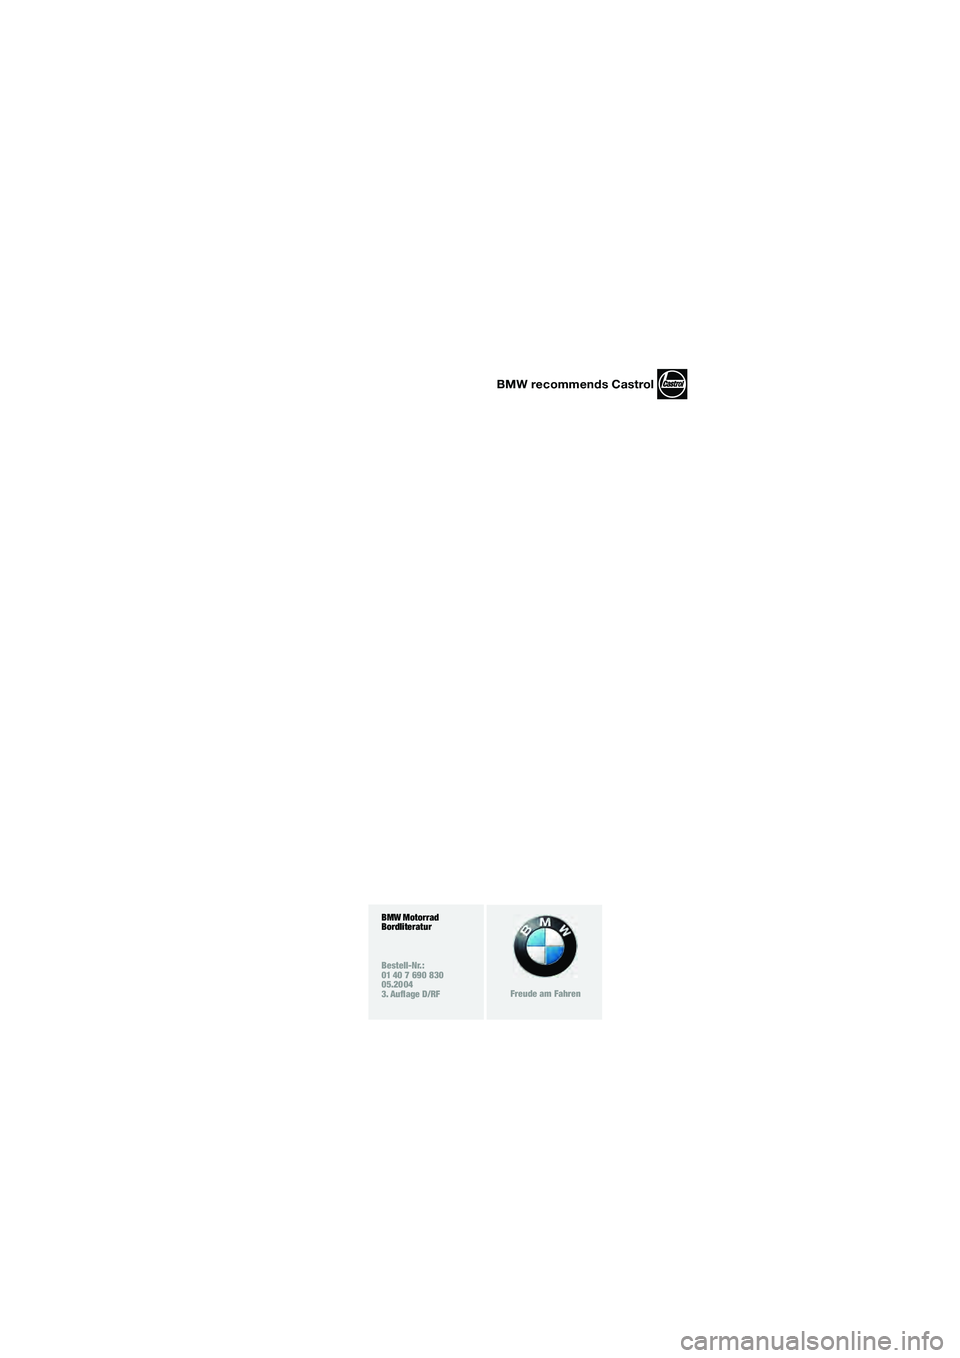 BMW MOTORRAD K 1200 RS 2004  Betriebsanleitung (in German) BMW recommends Castrol
BMW Motorrad
Bordliteratur
Bestell-Nr.:
01 40 7 690 830
05.2004
3. Auflage D/RF
Freude am Fahren
20k41bkd3.book  Seite 4  Mittwoch, 26. Mai 2004  3:18 15 